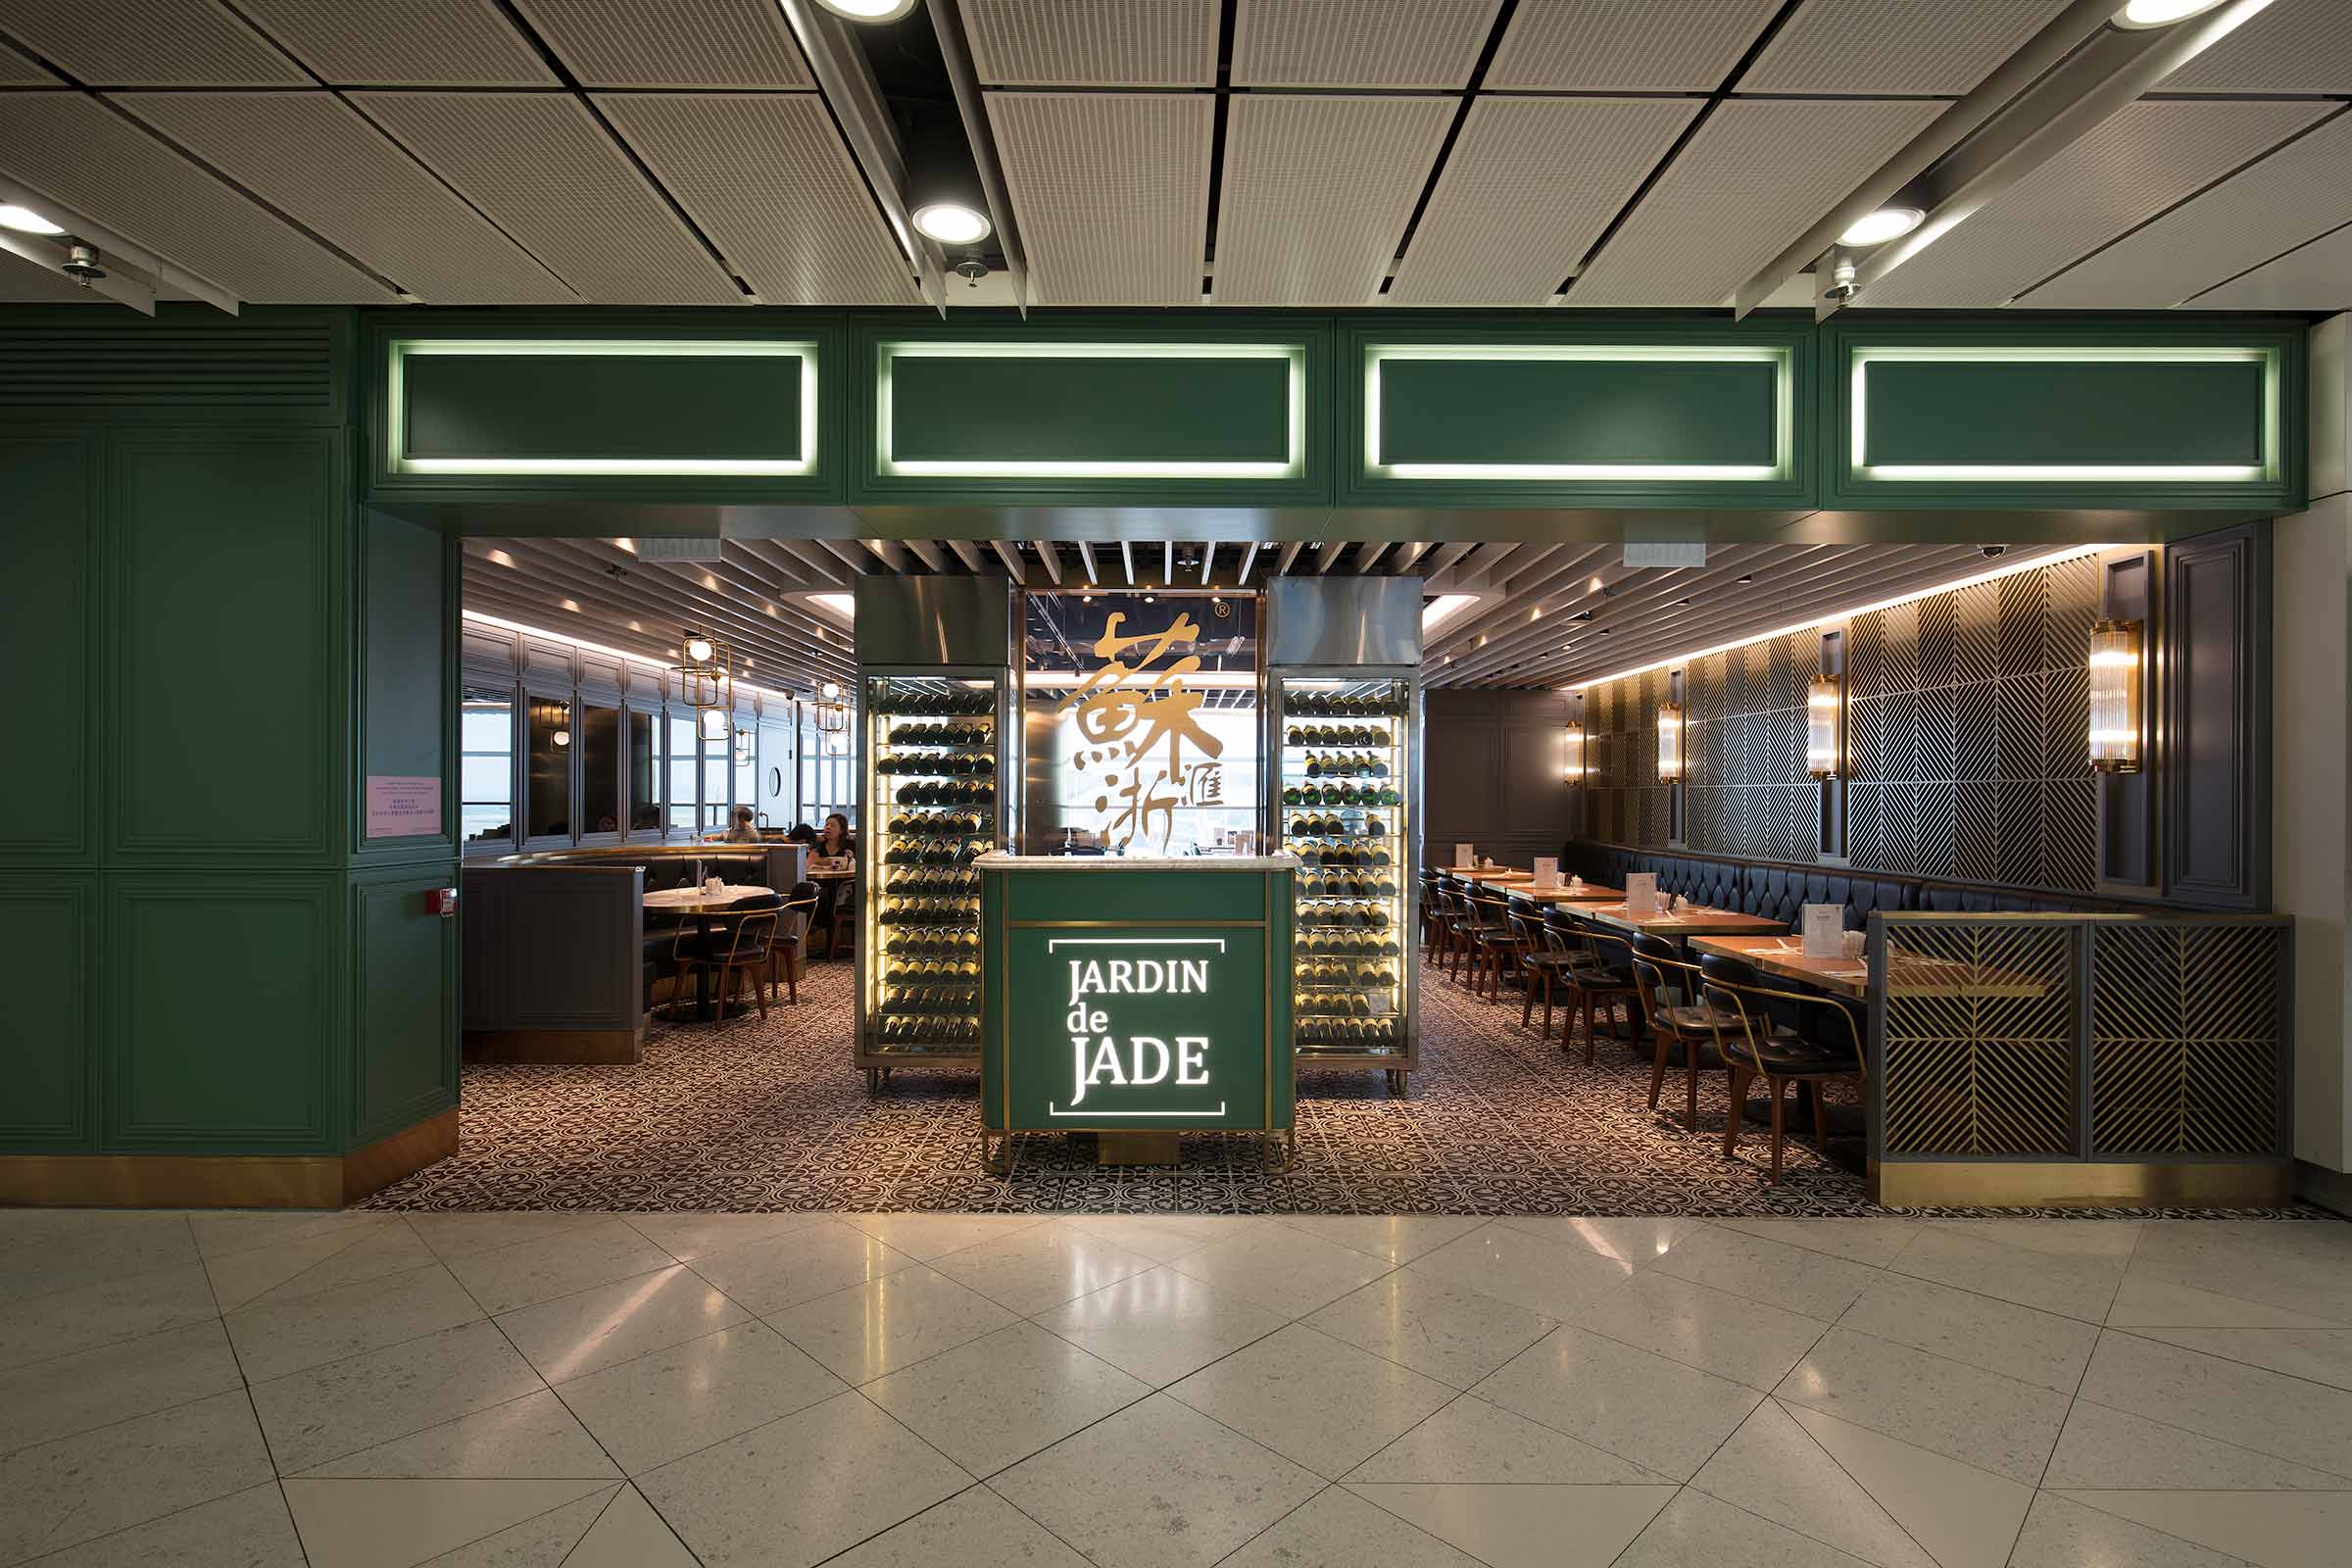 Jardin de Jade restaurant within Hong Kong International Airport